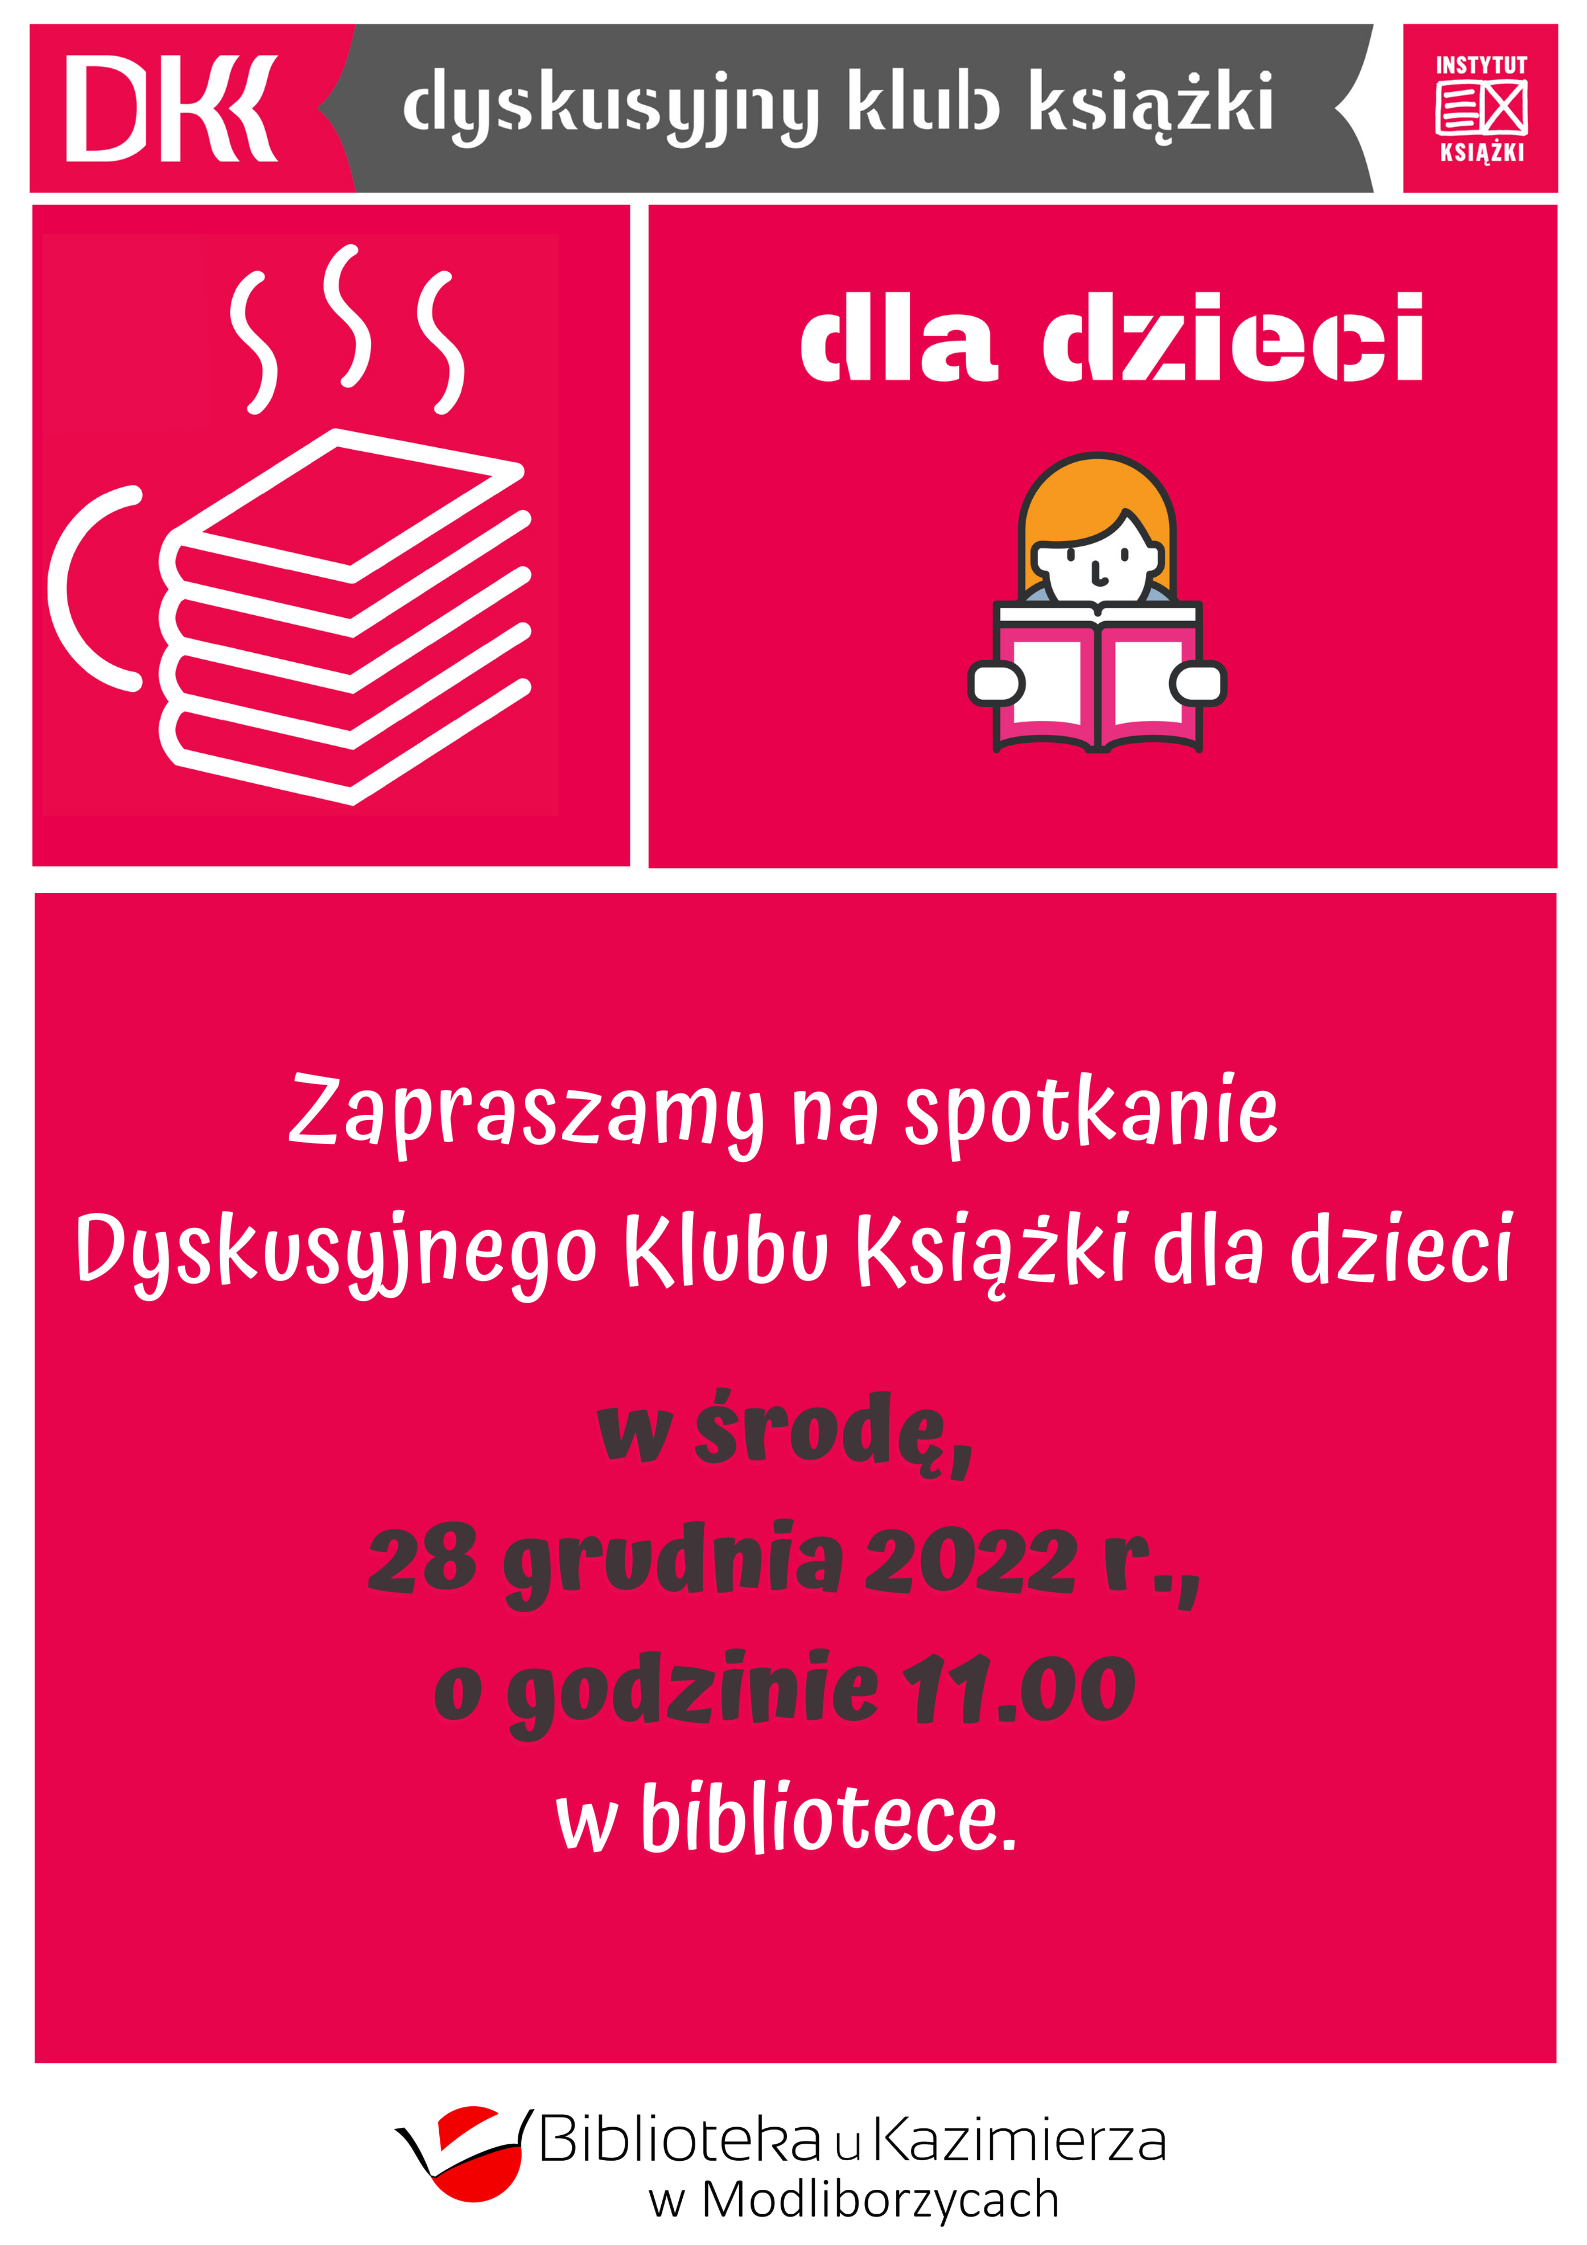 Serdecznie zapraszamy na spotkanie DKK w środę, 28.12.2022r., na godzinę 11:00  do biblioteki!